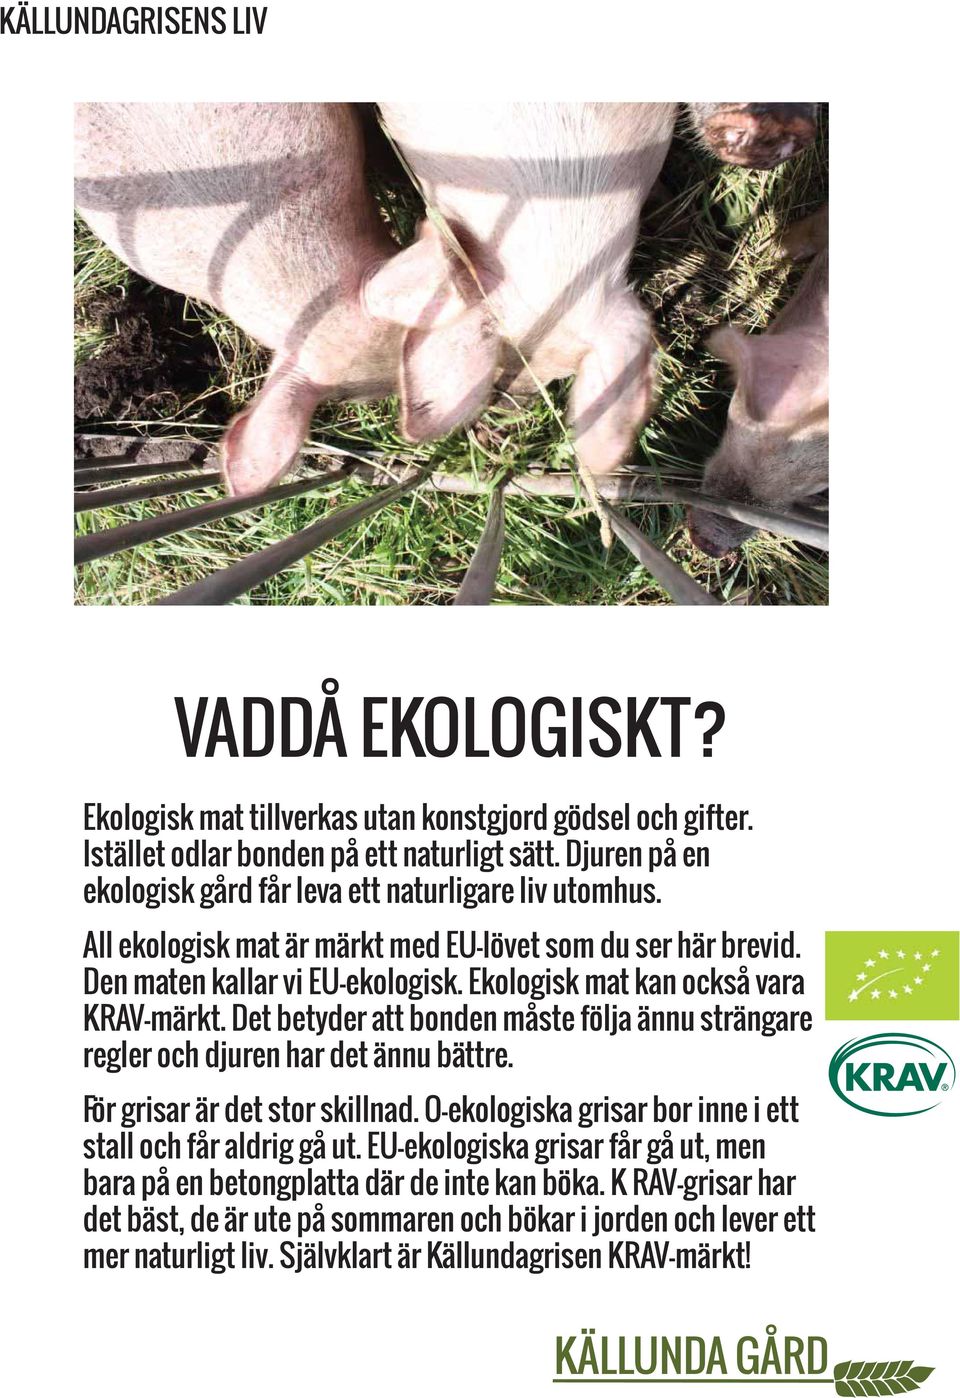 Ekologisk mat kan också vara KRAV-märkt. Det betyder att bonden måste följa ännu strängare regler och djuren har det ännu bättre. För grisar är det stor skillnad.